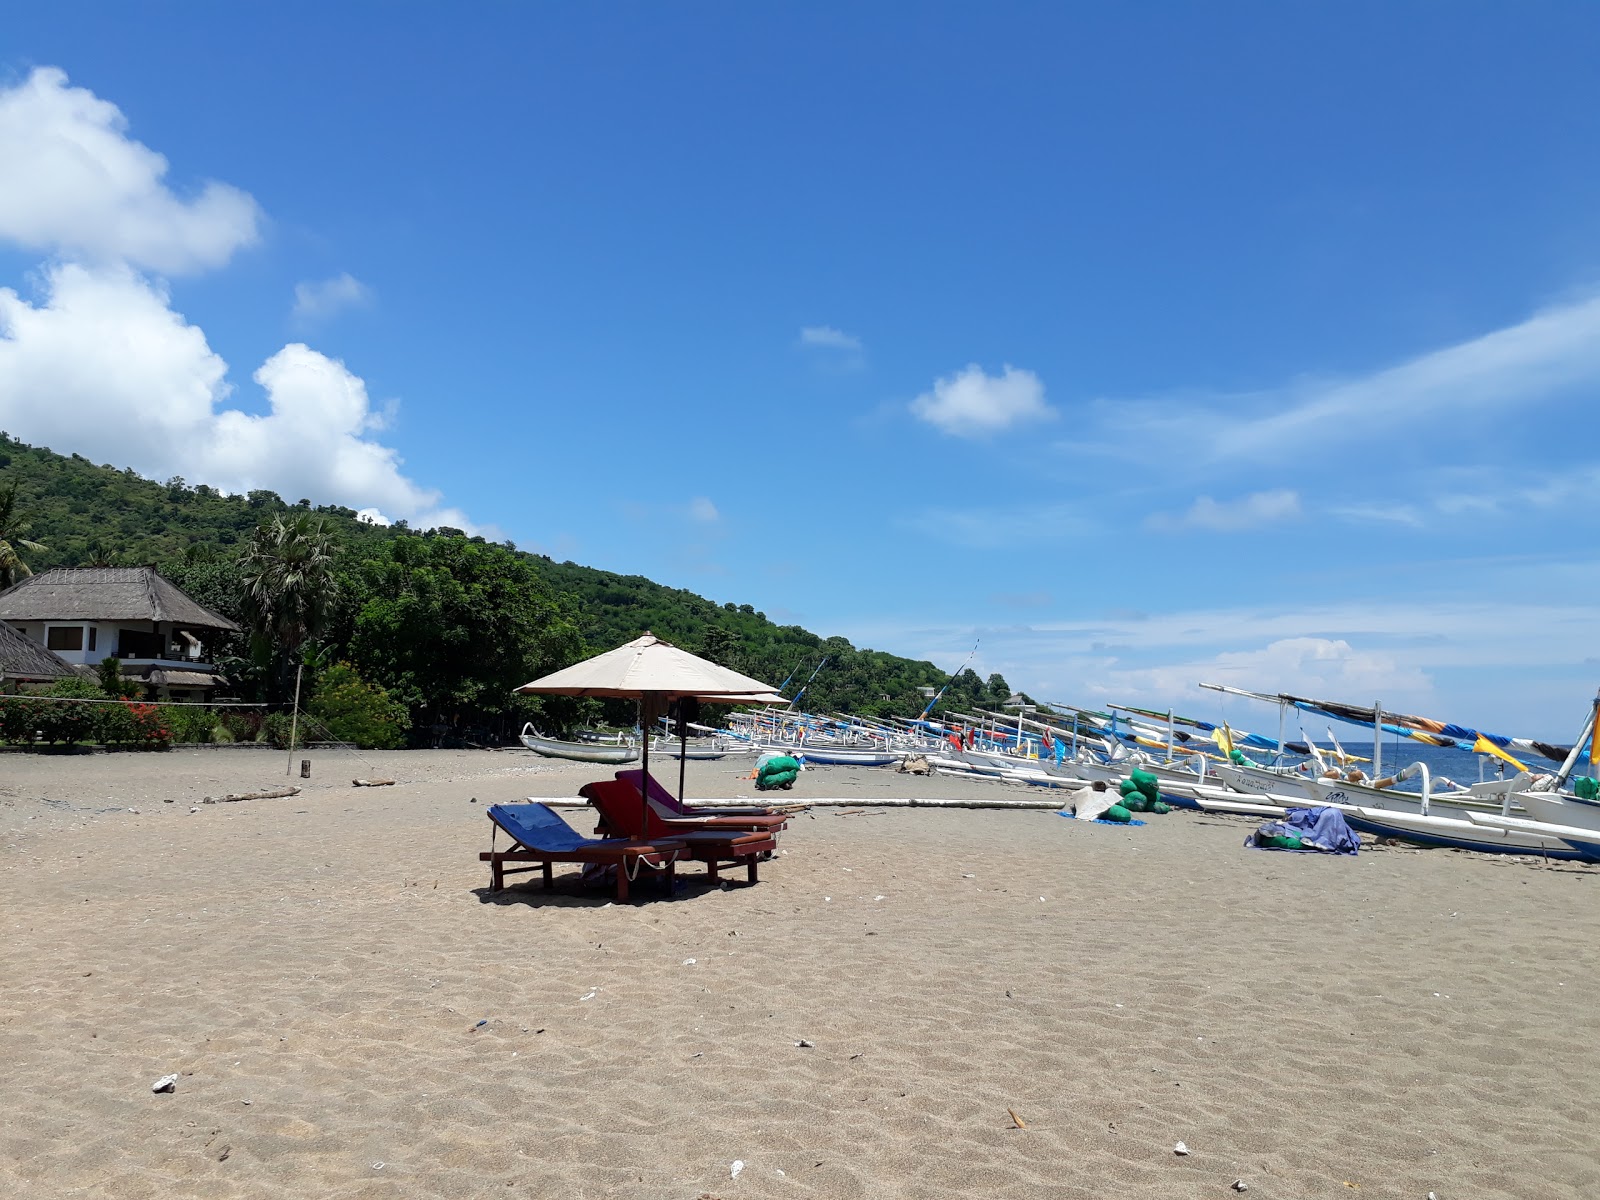 Fotografie cu Bintang Beach cu plajă spațioasă